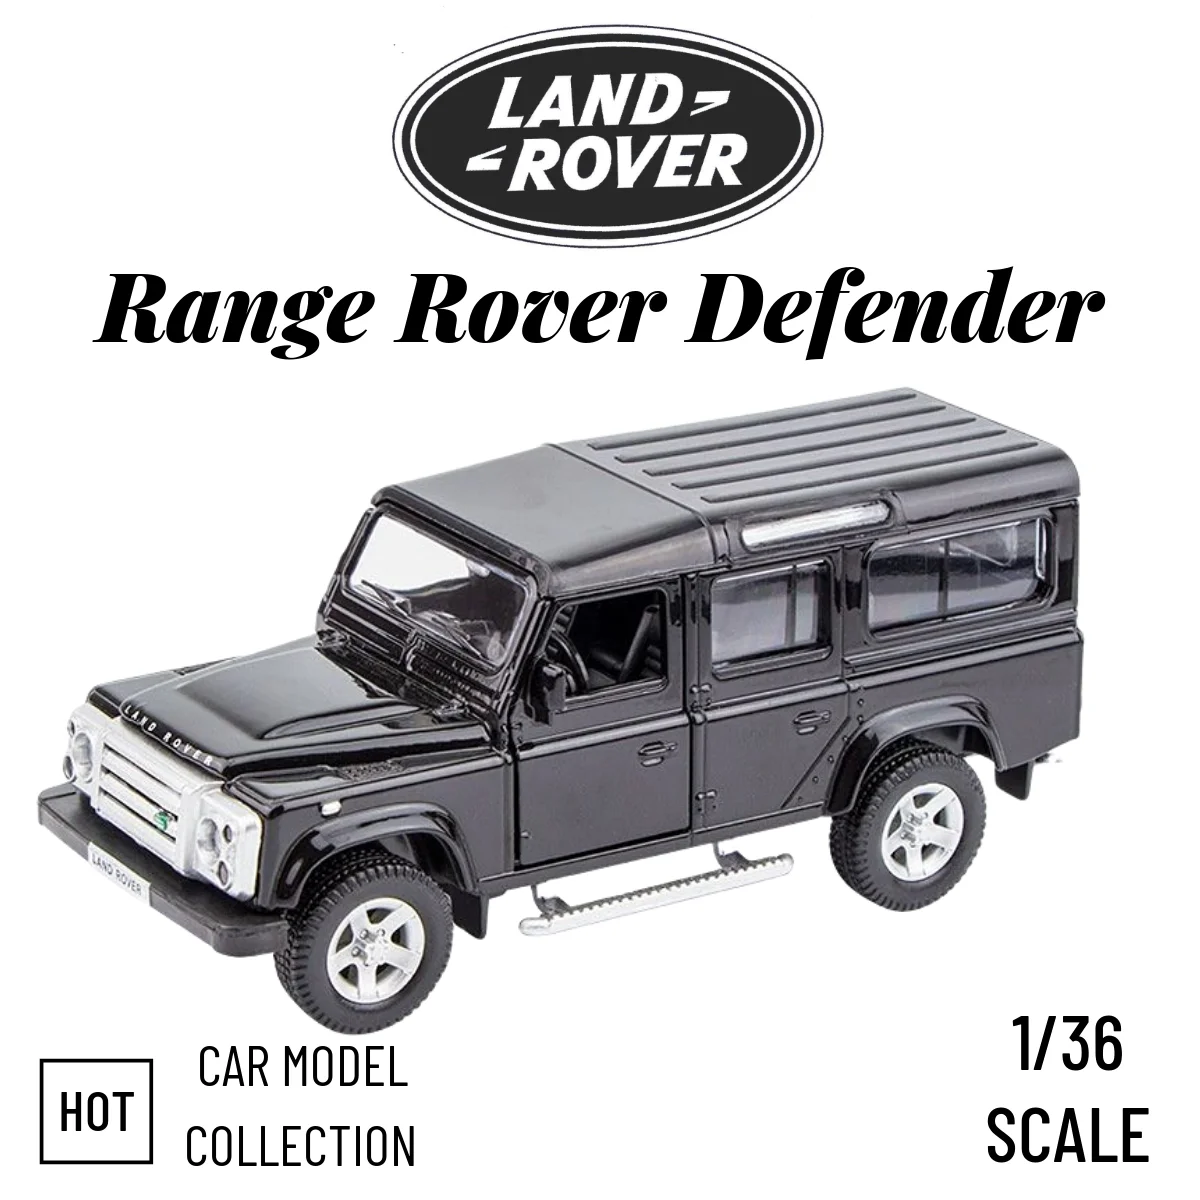 

Копия модели автомобиля в масштабе 1/36, миниатюрная Коллекционная литой игрушка Range Rover Defender из сплава, подарок на Рождество, украшение для офиса и дома